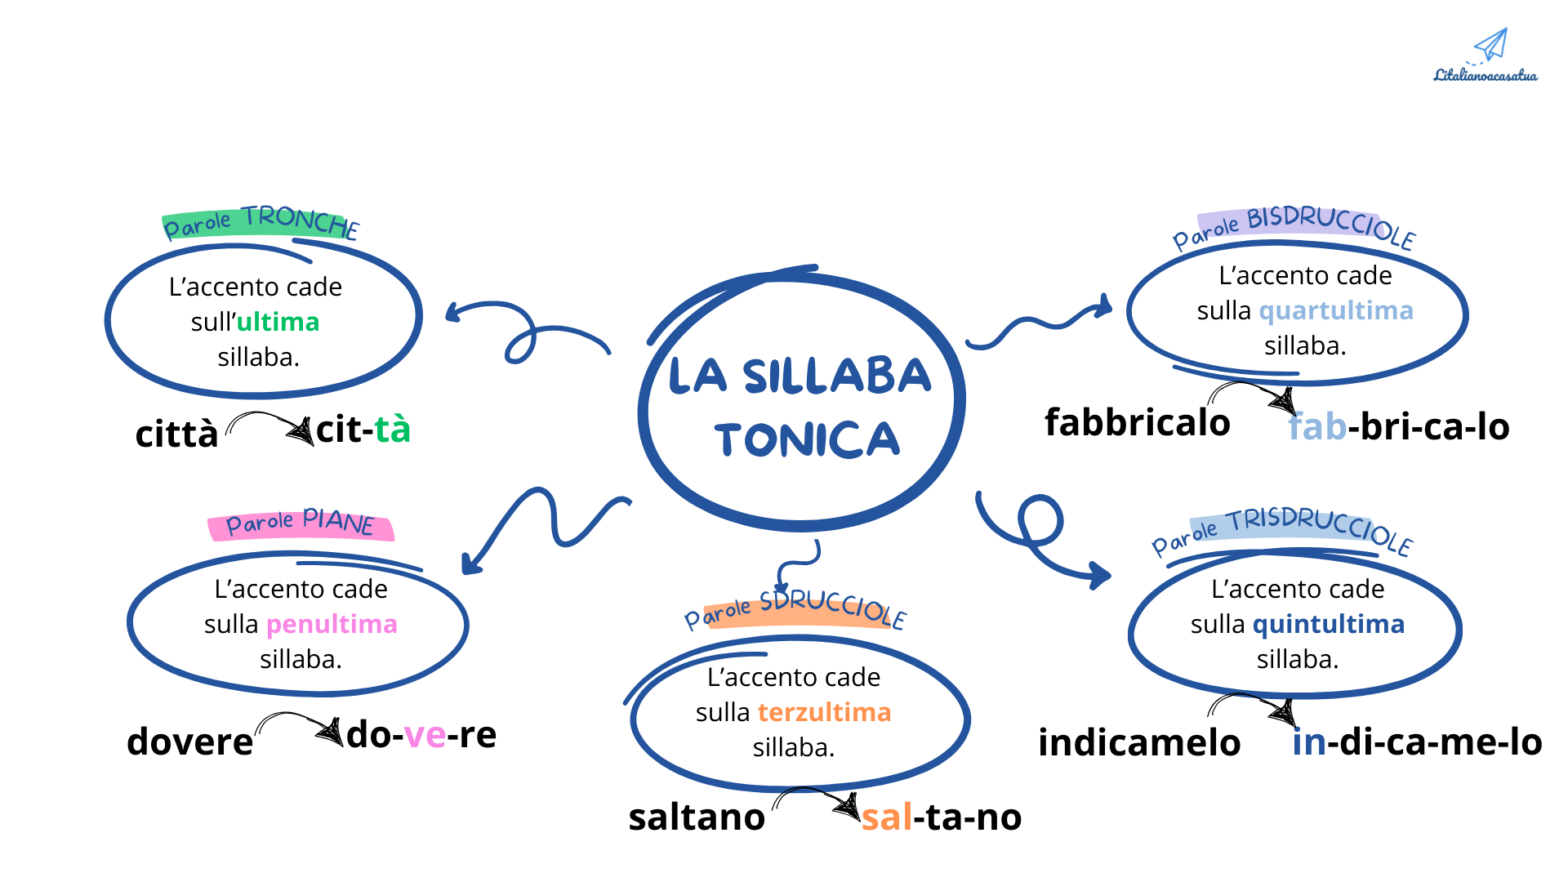 La sillaba tonica nella lingua italiana